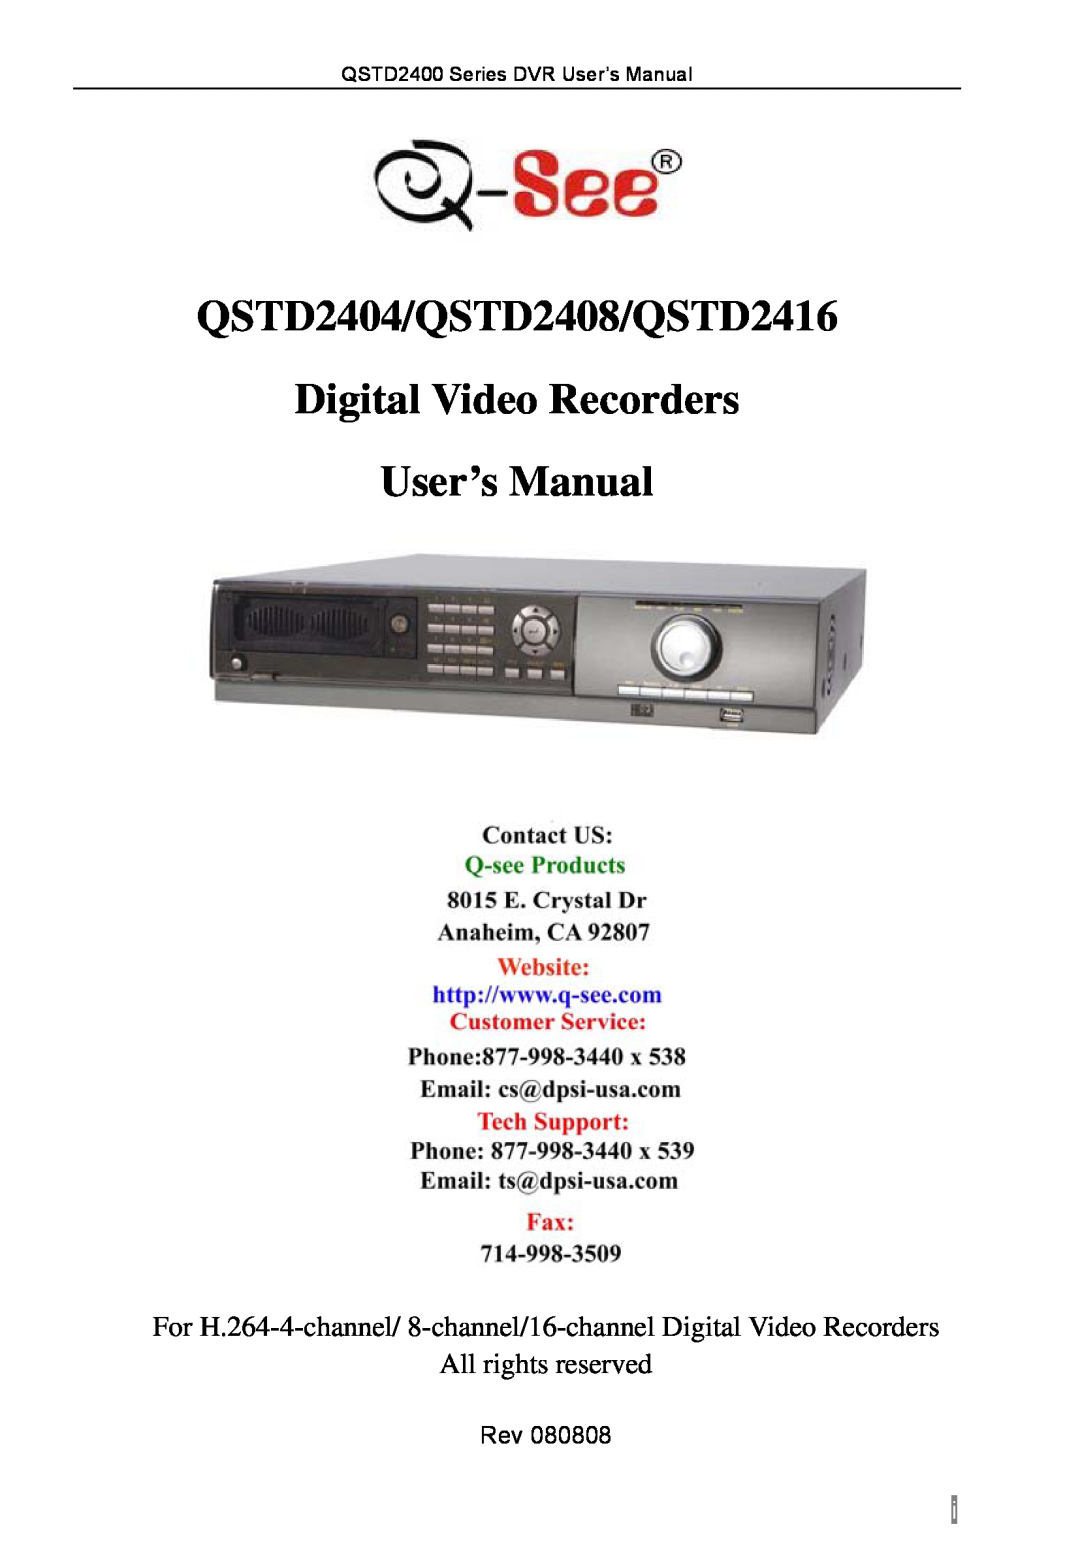 Q-See user manual QSTD2404/QSTD2408/QSTD2416 Digital Video Recorders User’s Manual, All rights reserved 